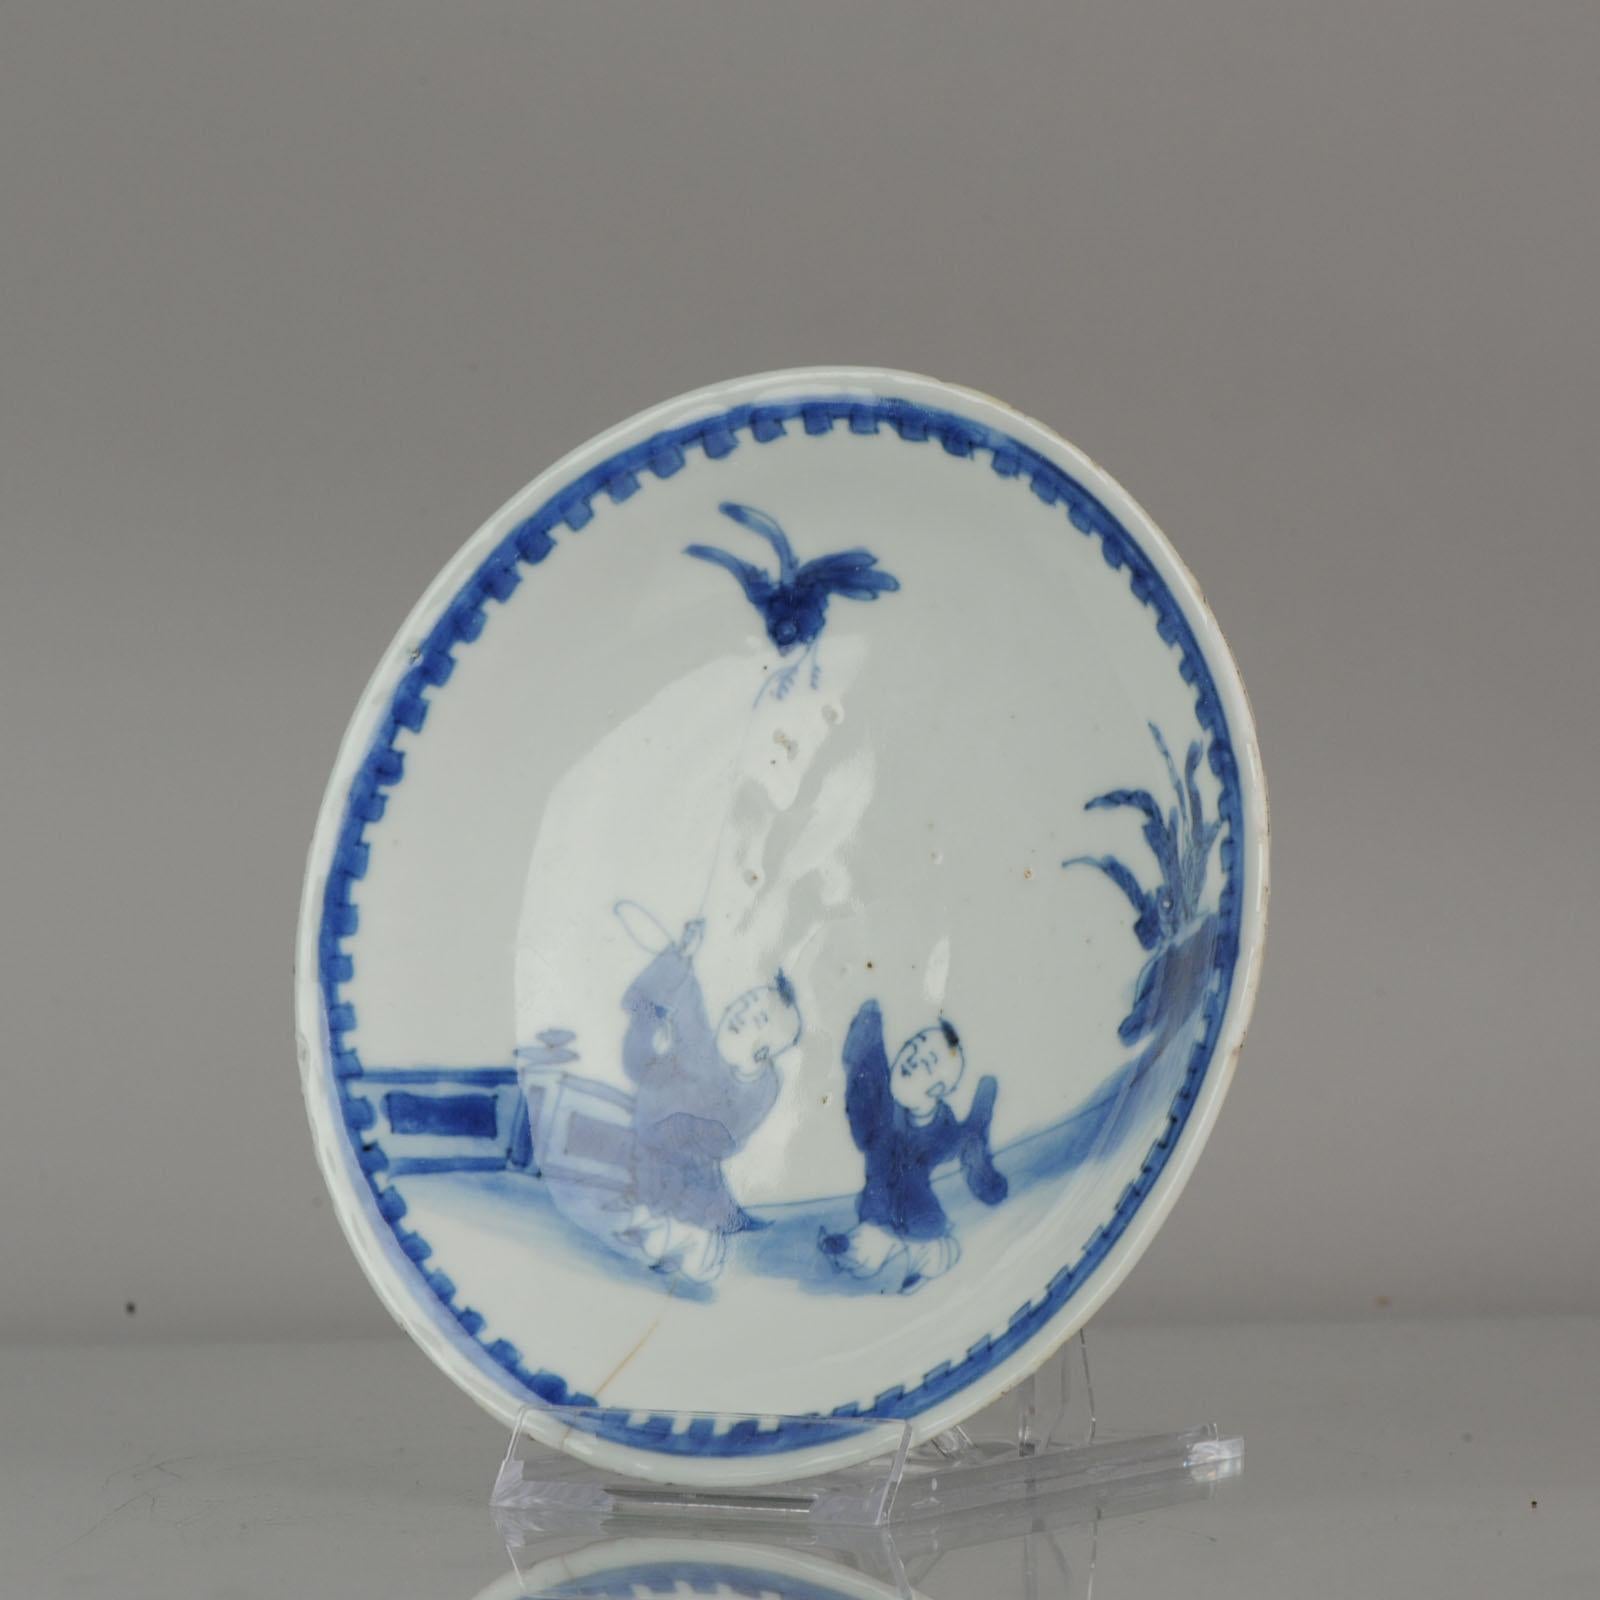 Une assiette très joliment décorée.
Plat en porcelaine Ko-Sometsuke de la fin de la période Ming, période Wanli ou Tianqi, 1600-1627.
Ce plat de service Kaiseki en porcelaine bleue et blanche est décoré de deux garçons qui tiennent un oiseau au